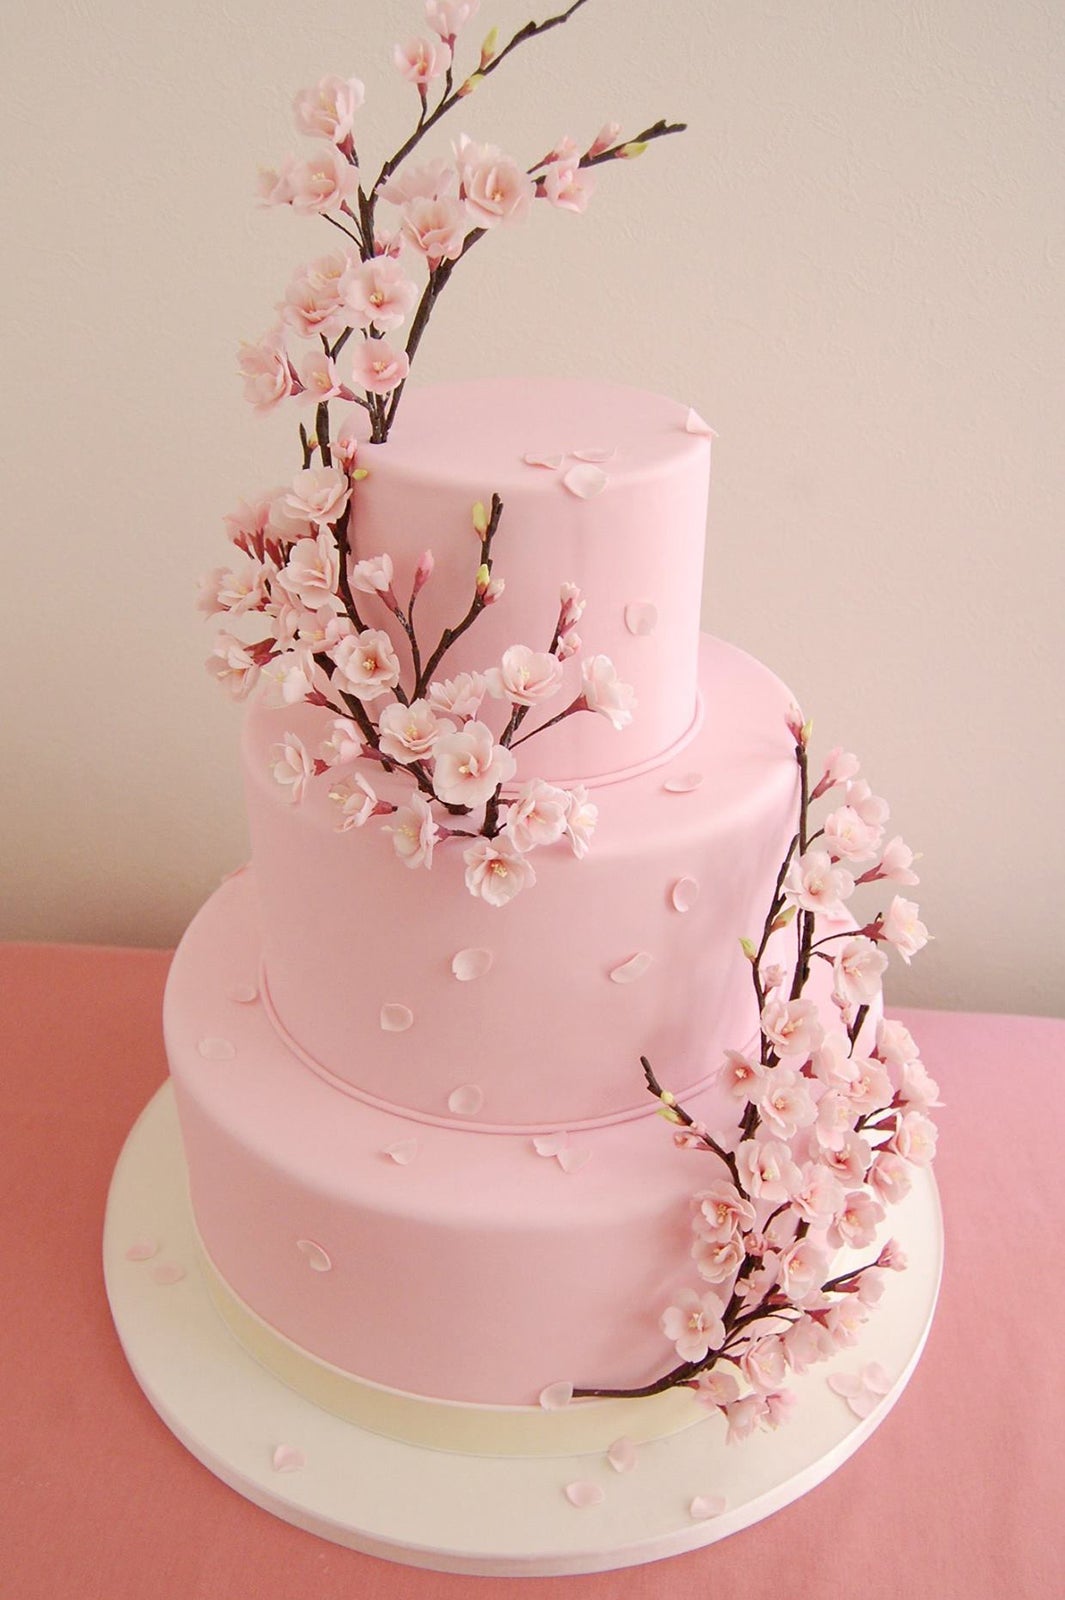 月9 好きな人がいること 美咲が作るケーキとは ケーキデザイナー 鈴木ありさの世界 モデルプレス